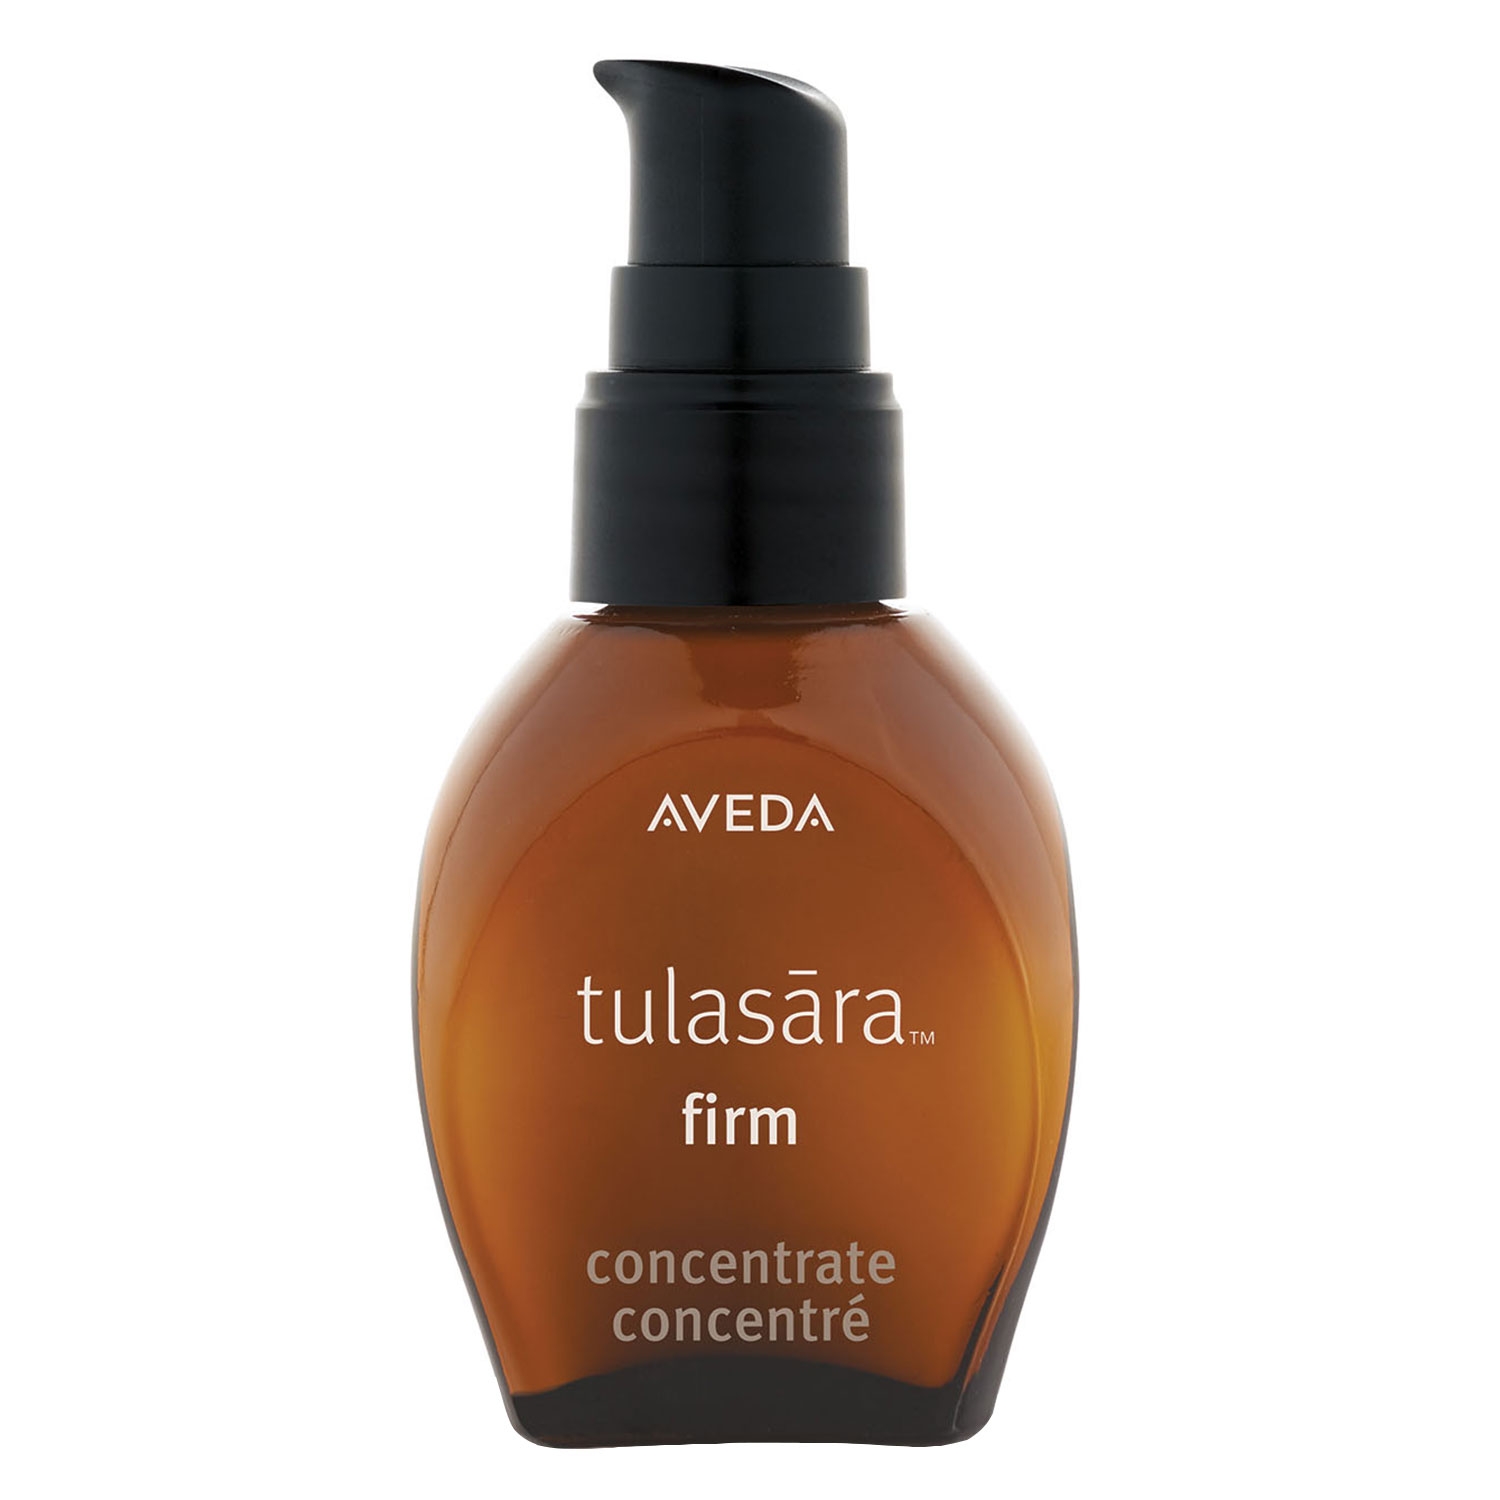 Produktbild von tulasara - firm concentrate